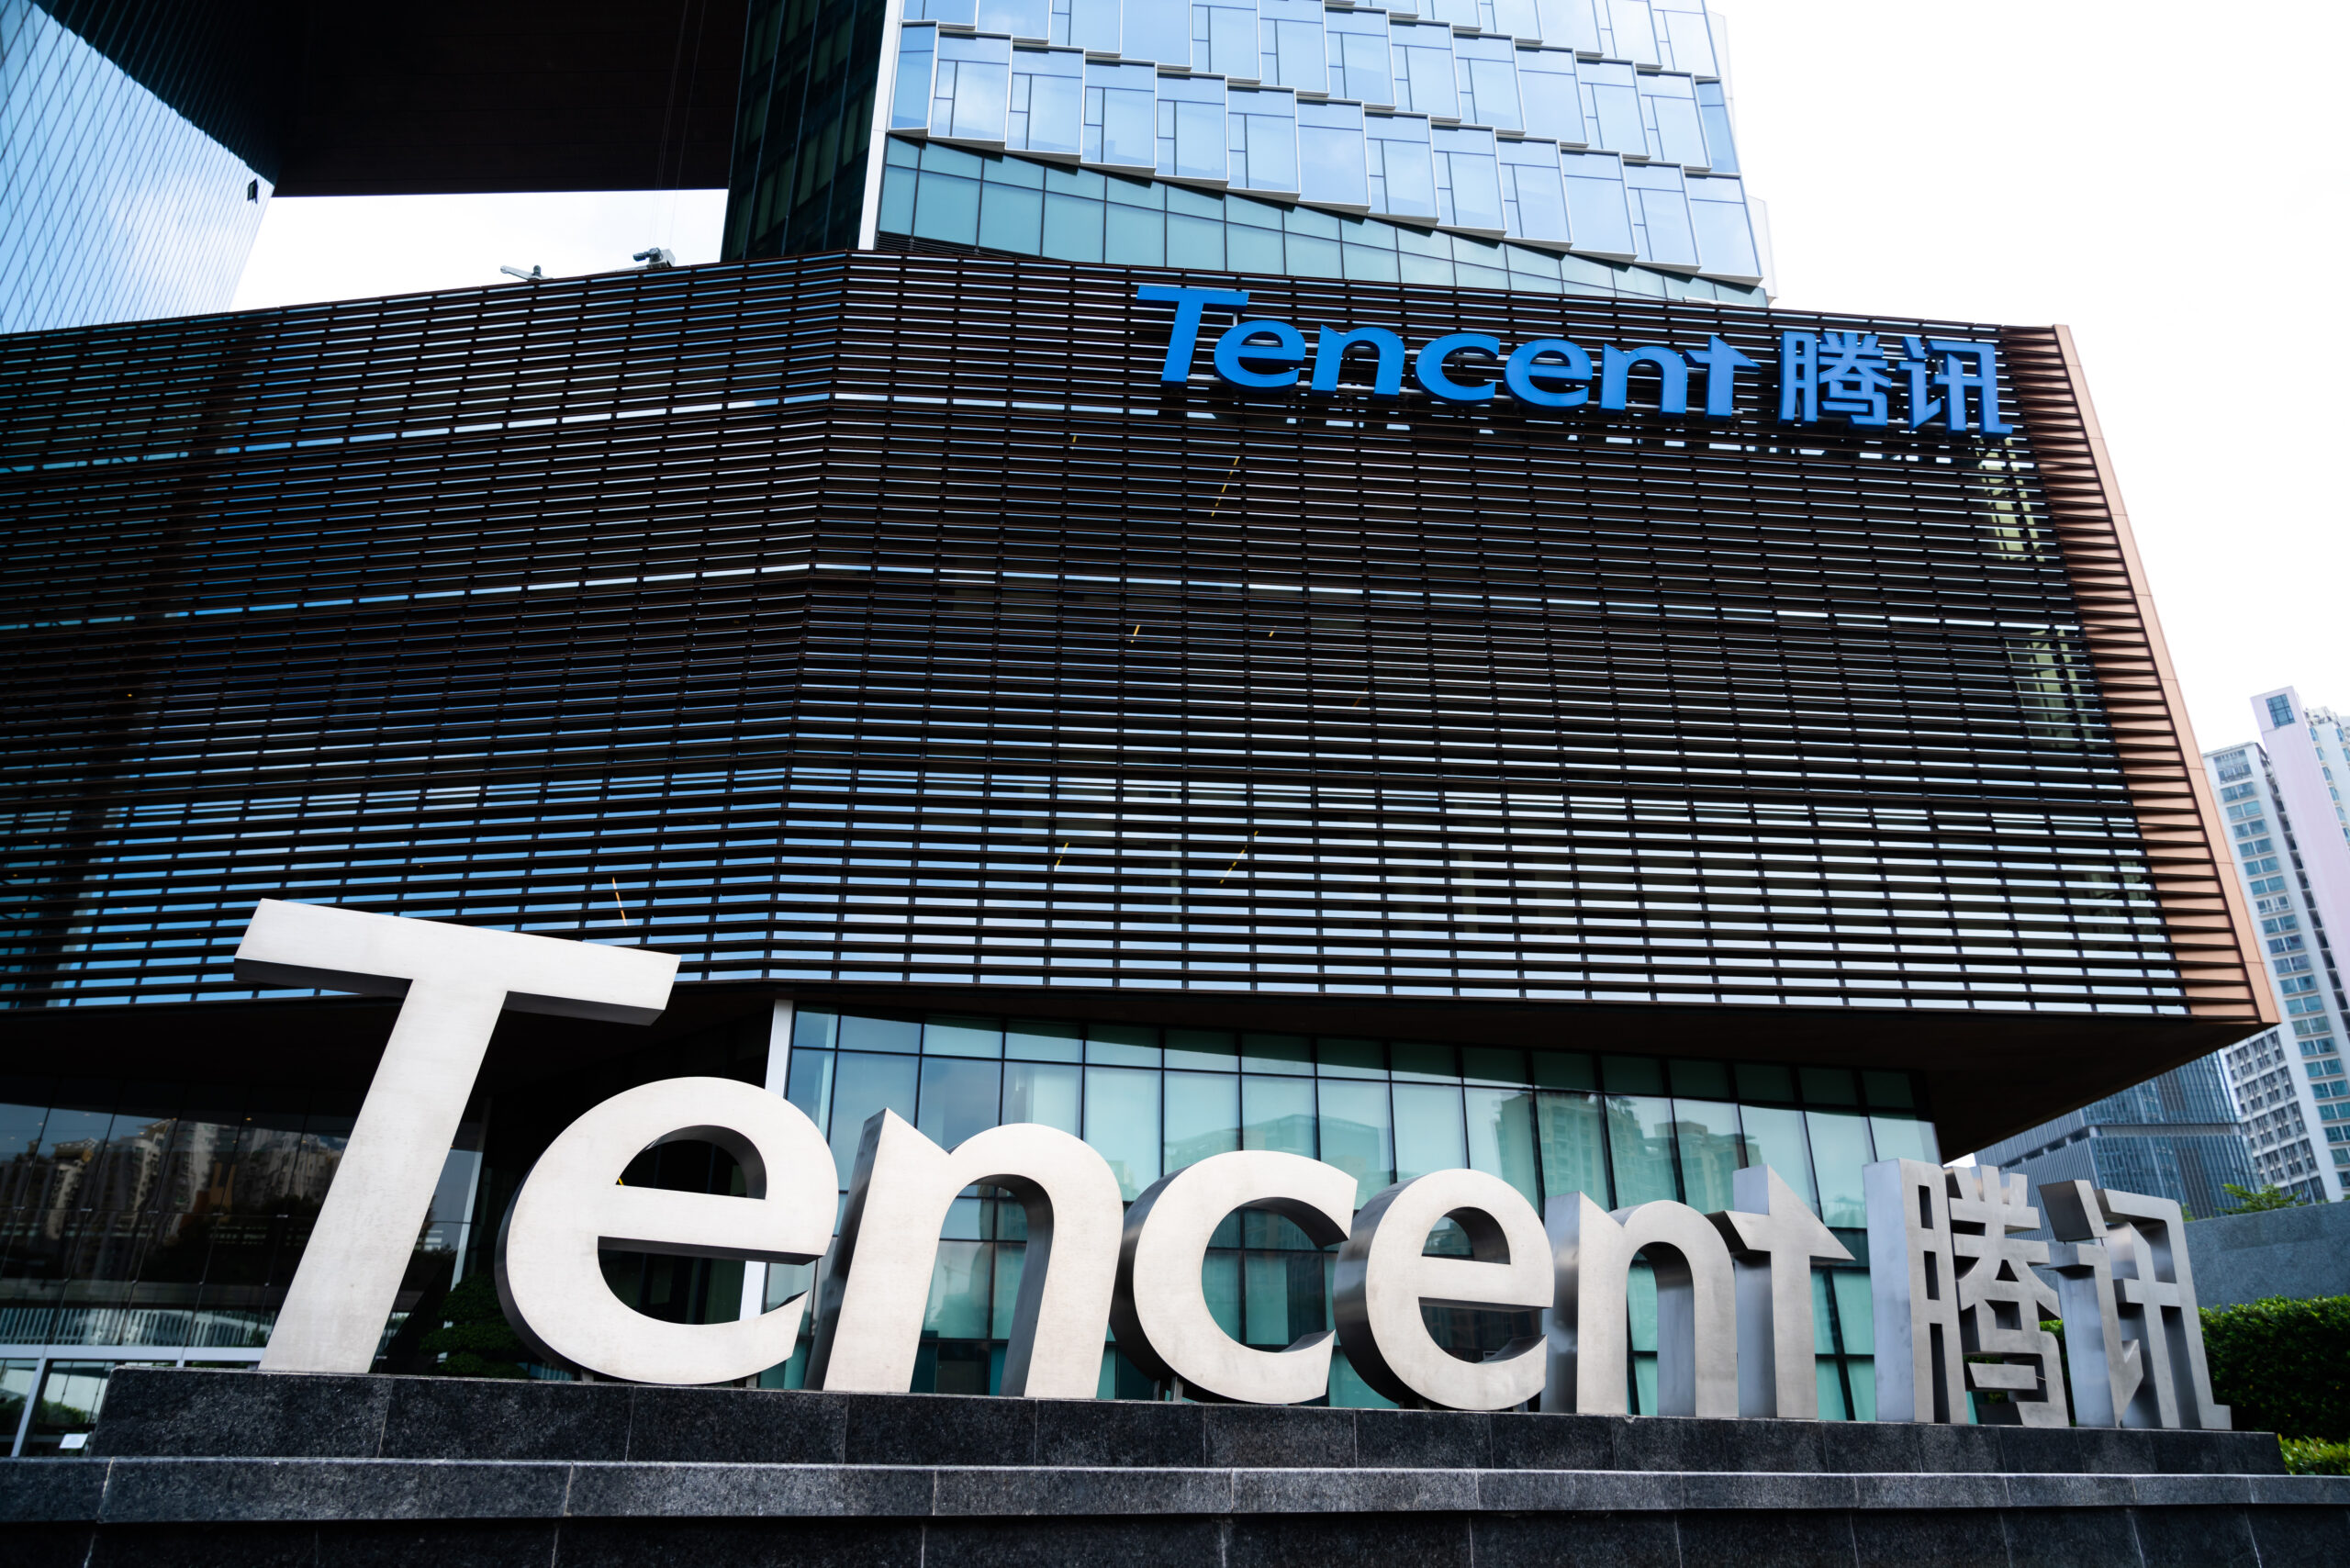 Tencent រាយការណ៍ពីការកើនឡើងនៃប្រាក់ចំណូល ប្រាក់ចំណេញសុទ្ធនៅក្នុងត្រីមាសទីបួន នៃឆ្នាំ 2022